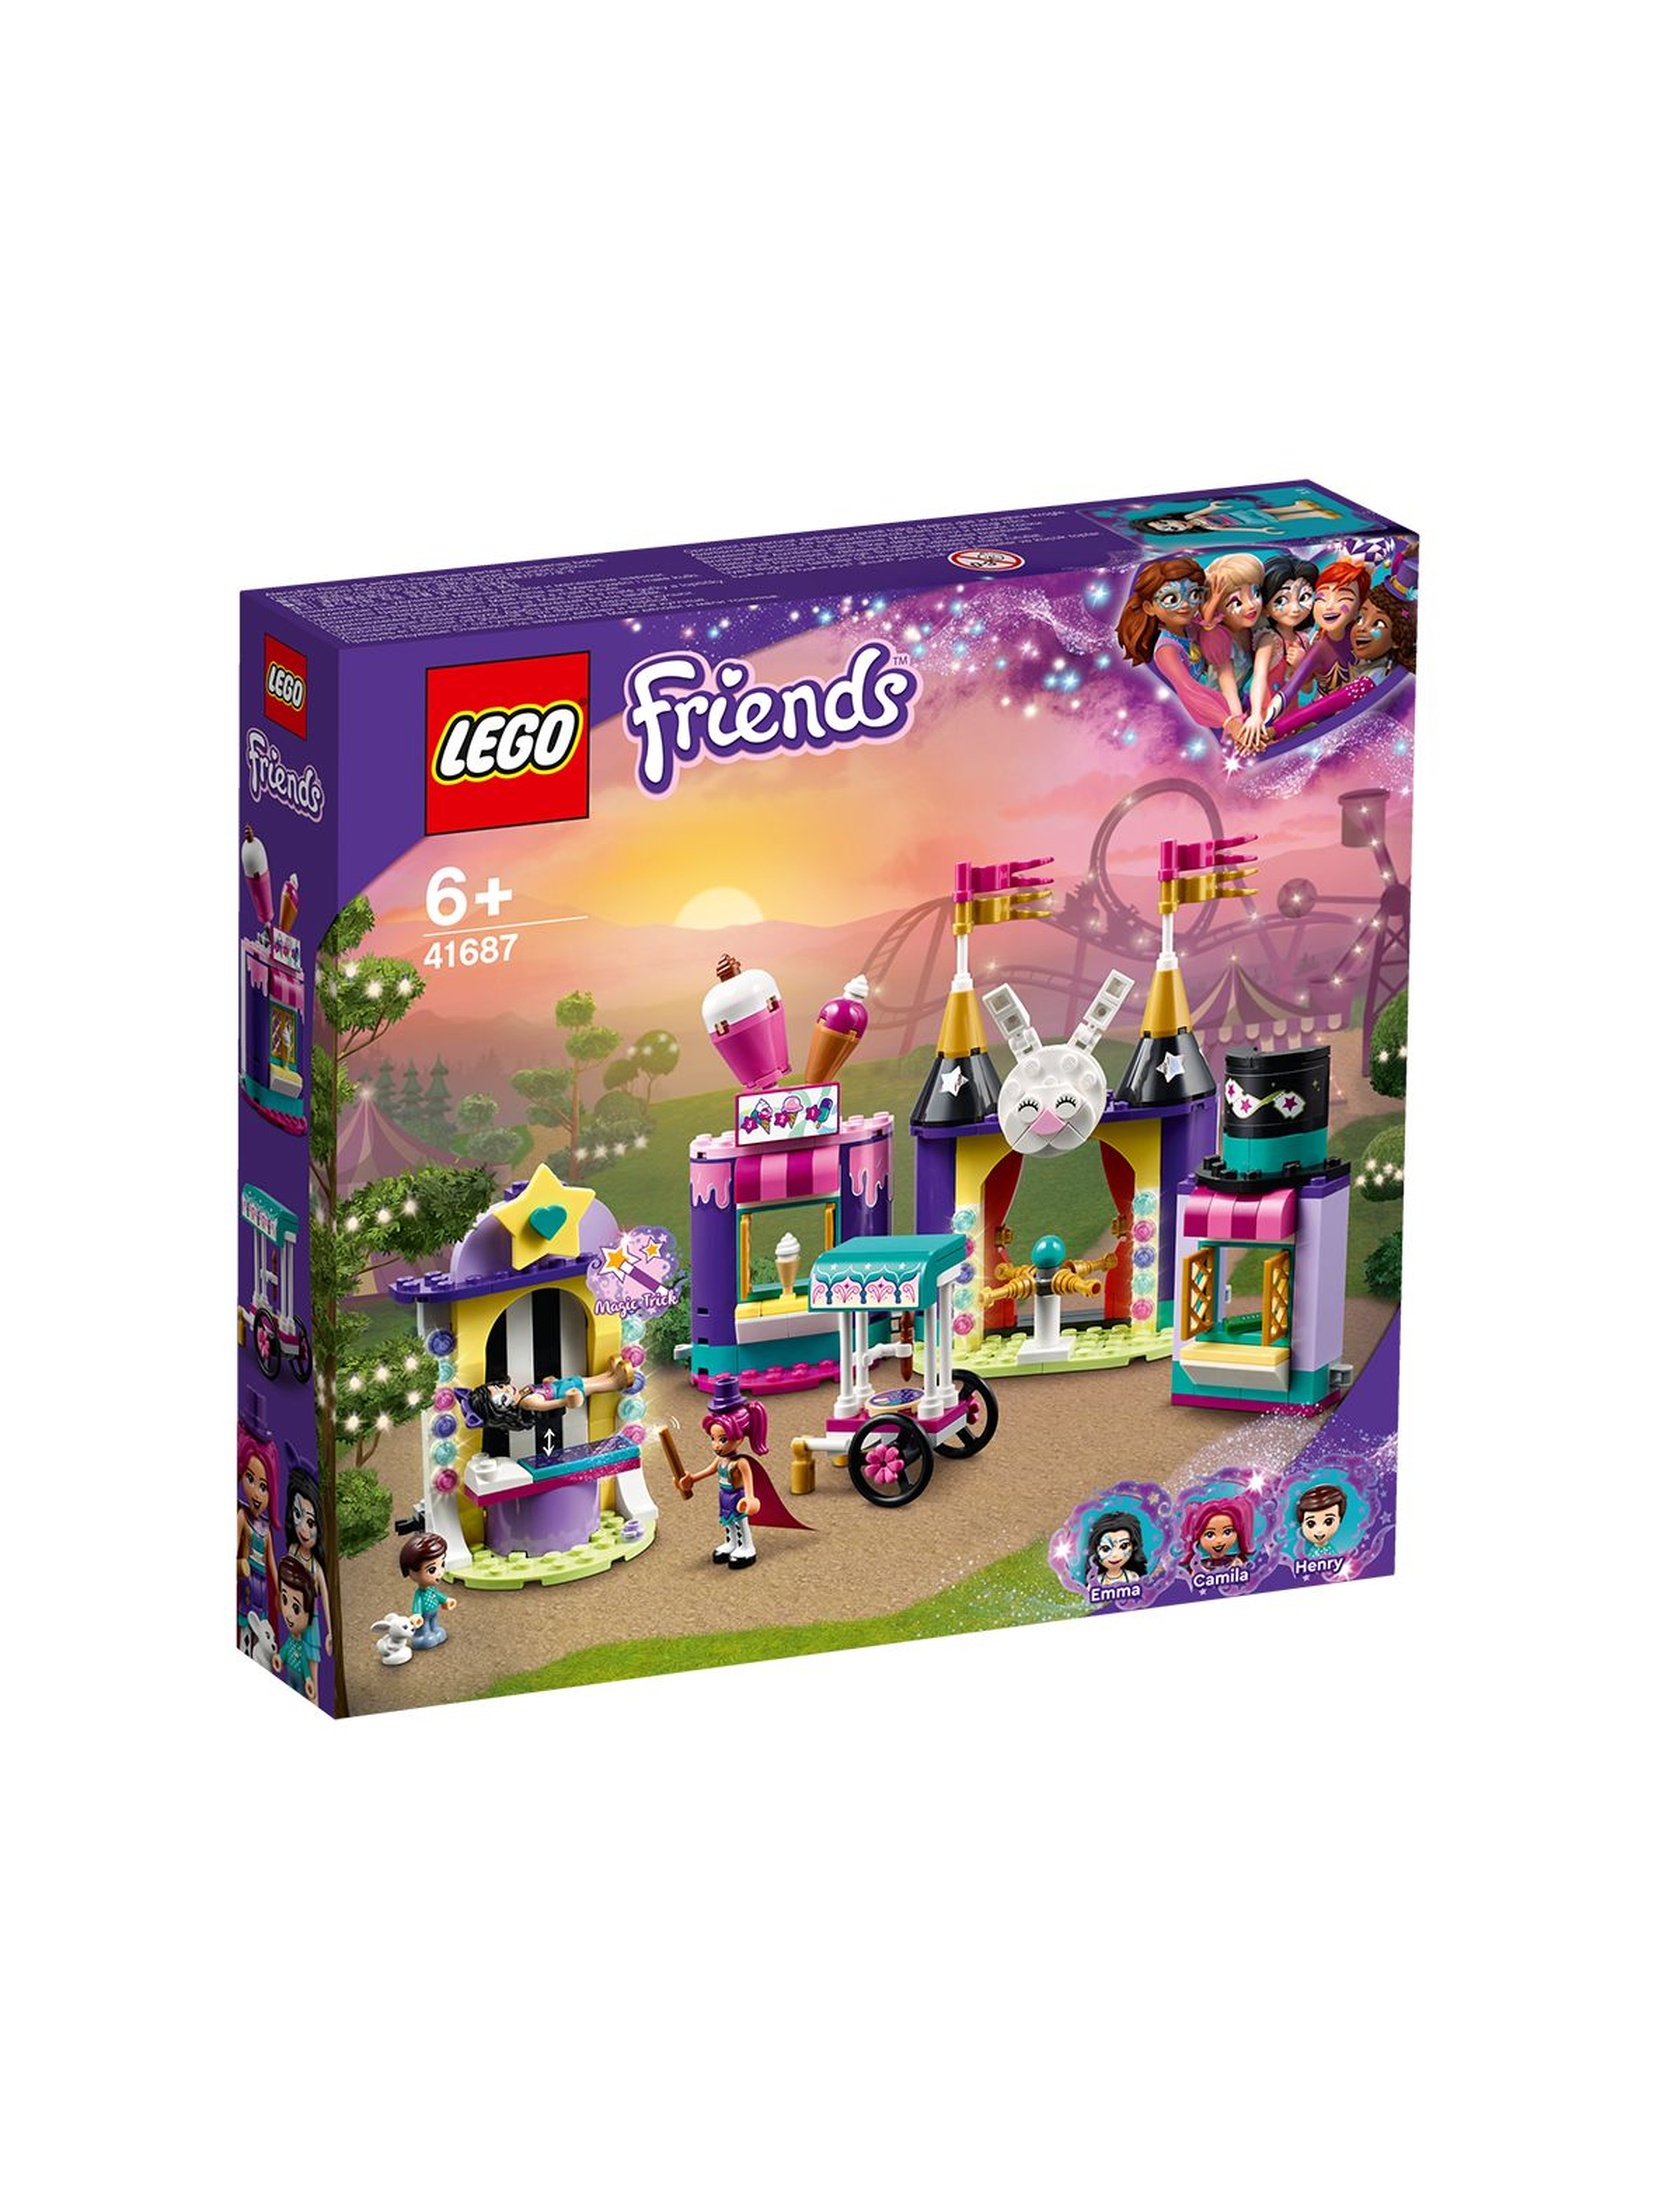 Lego Friends Magiczne stoiska w wesołym miasteczku 41687 - 361 elementów, wiek 6+